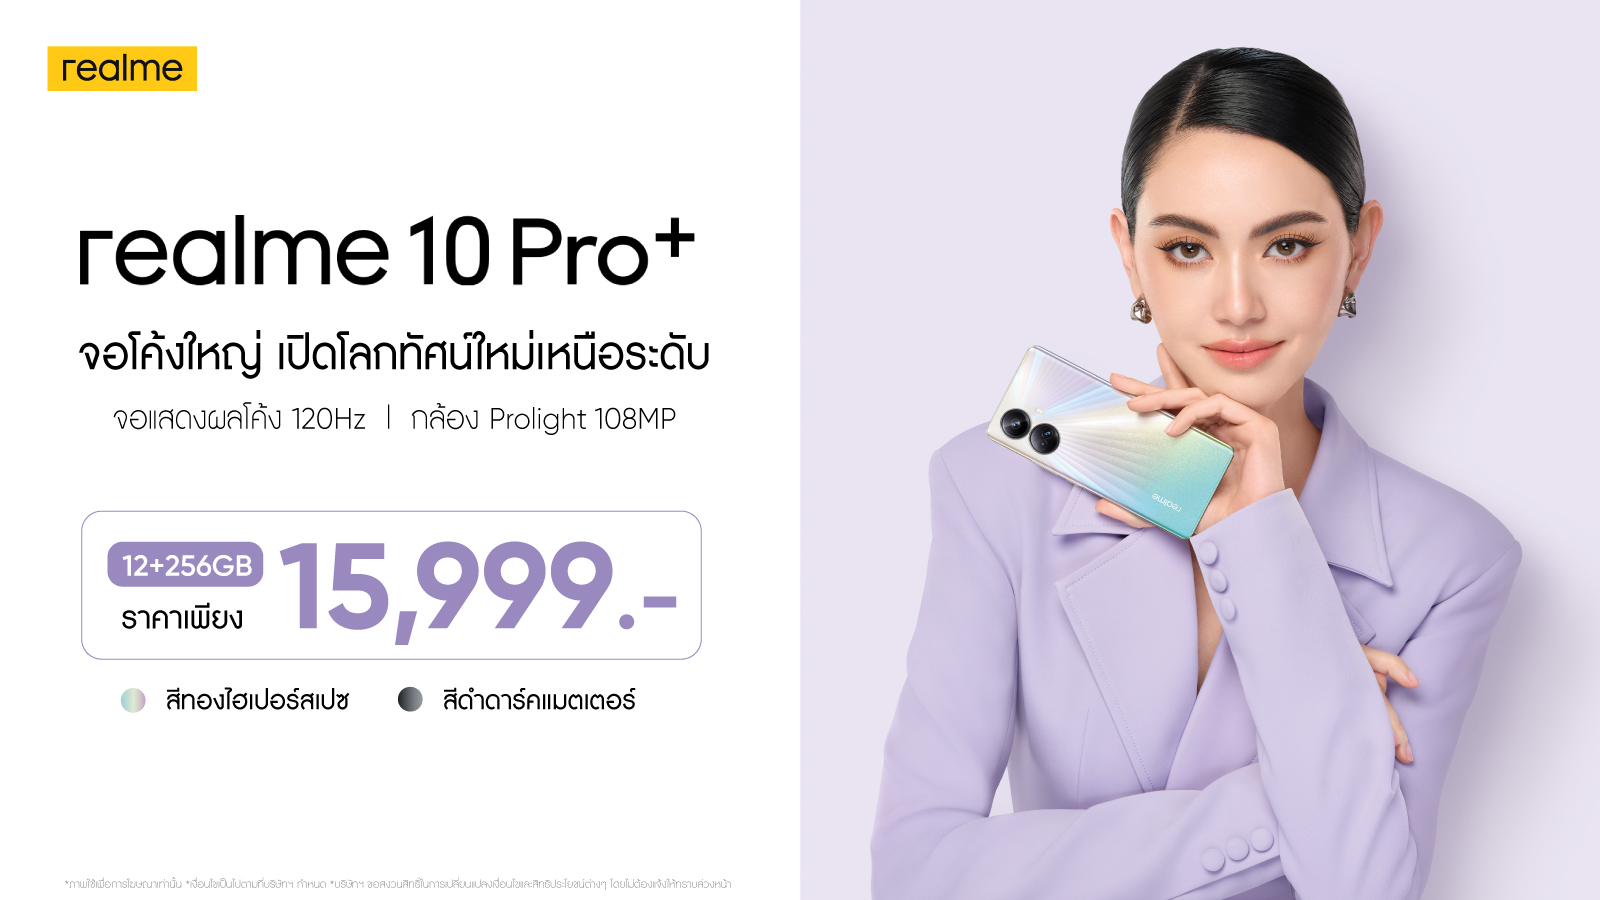 realme 10 Pro Series เปิดตัวในประเทศไทยอย่างเป็นทางการ เต็มตากับจอโค้งใหญ่ เปิดโลกทัศน์ใหม่เหนือระดับ